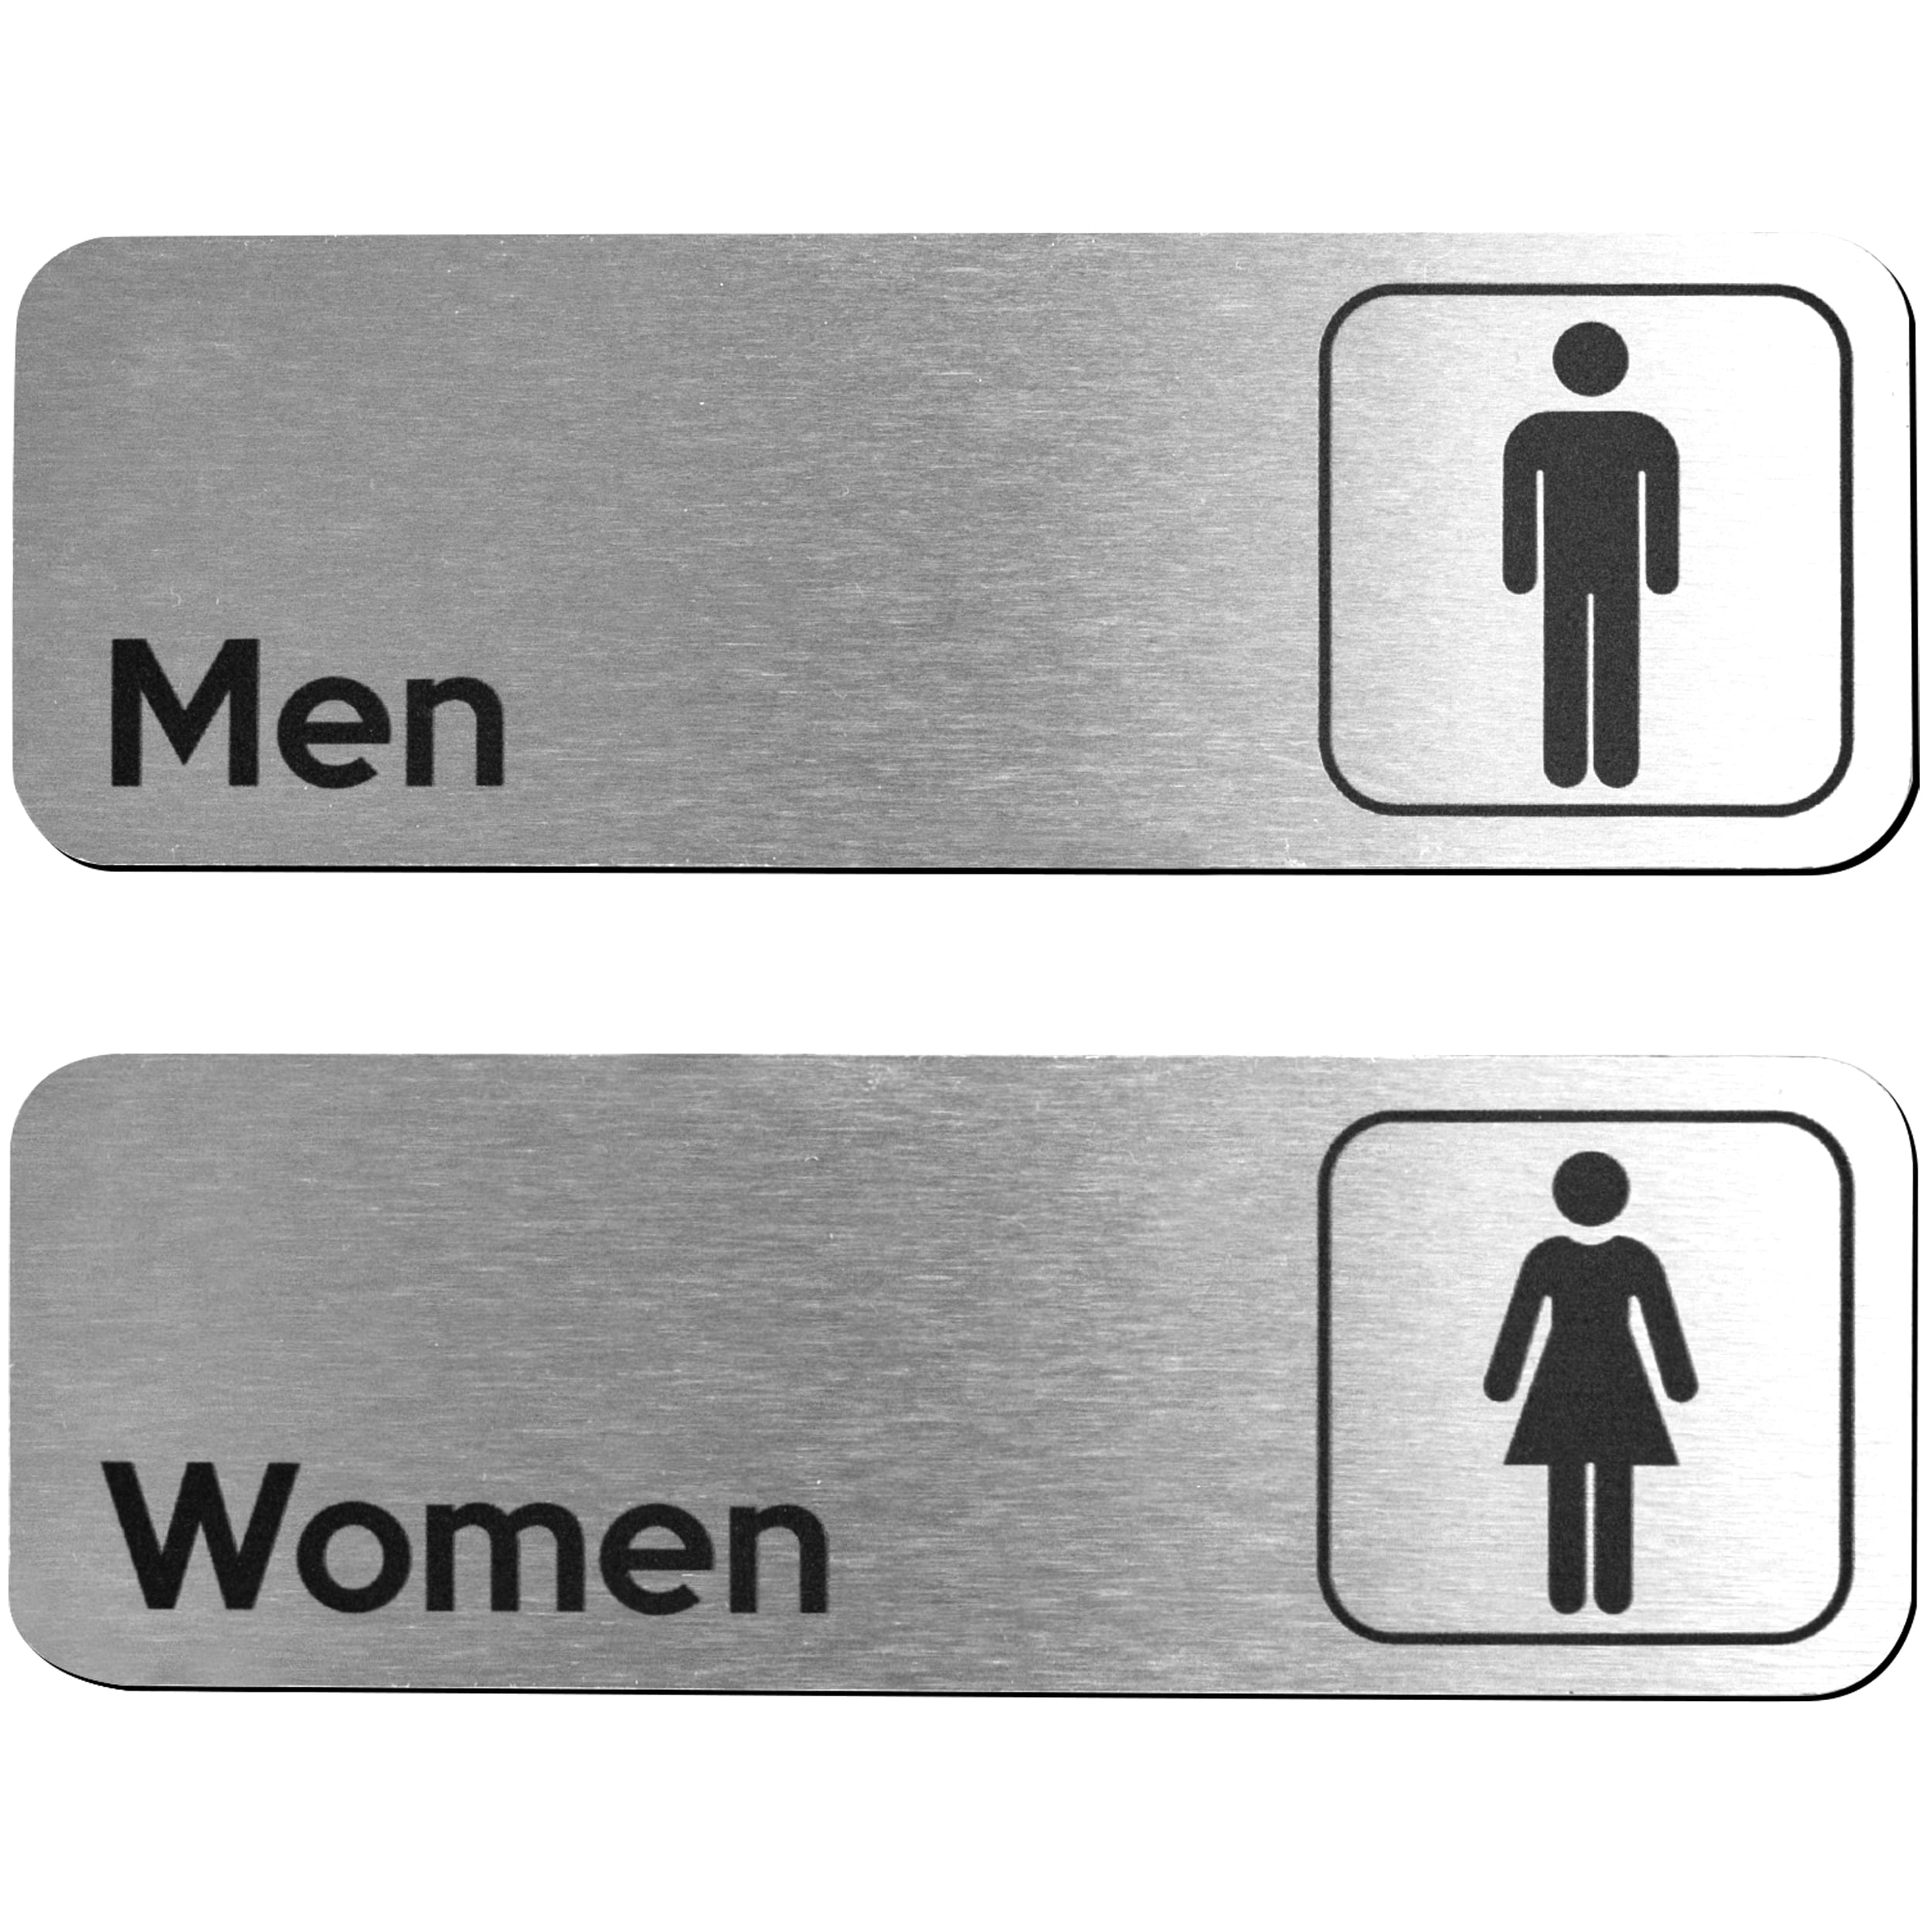 2 pack All Gender Restroom Sign 6"x9" Brushed Aluminum 